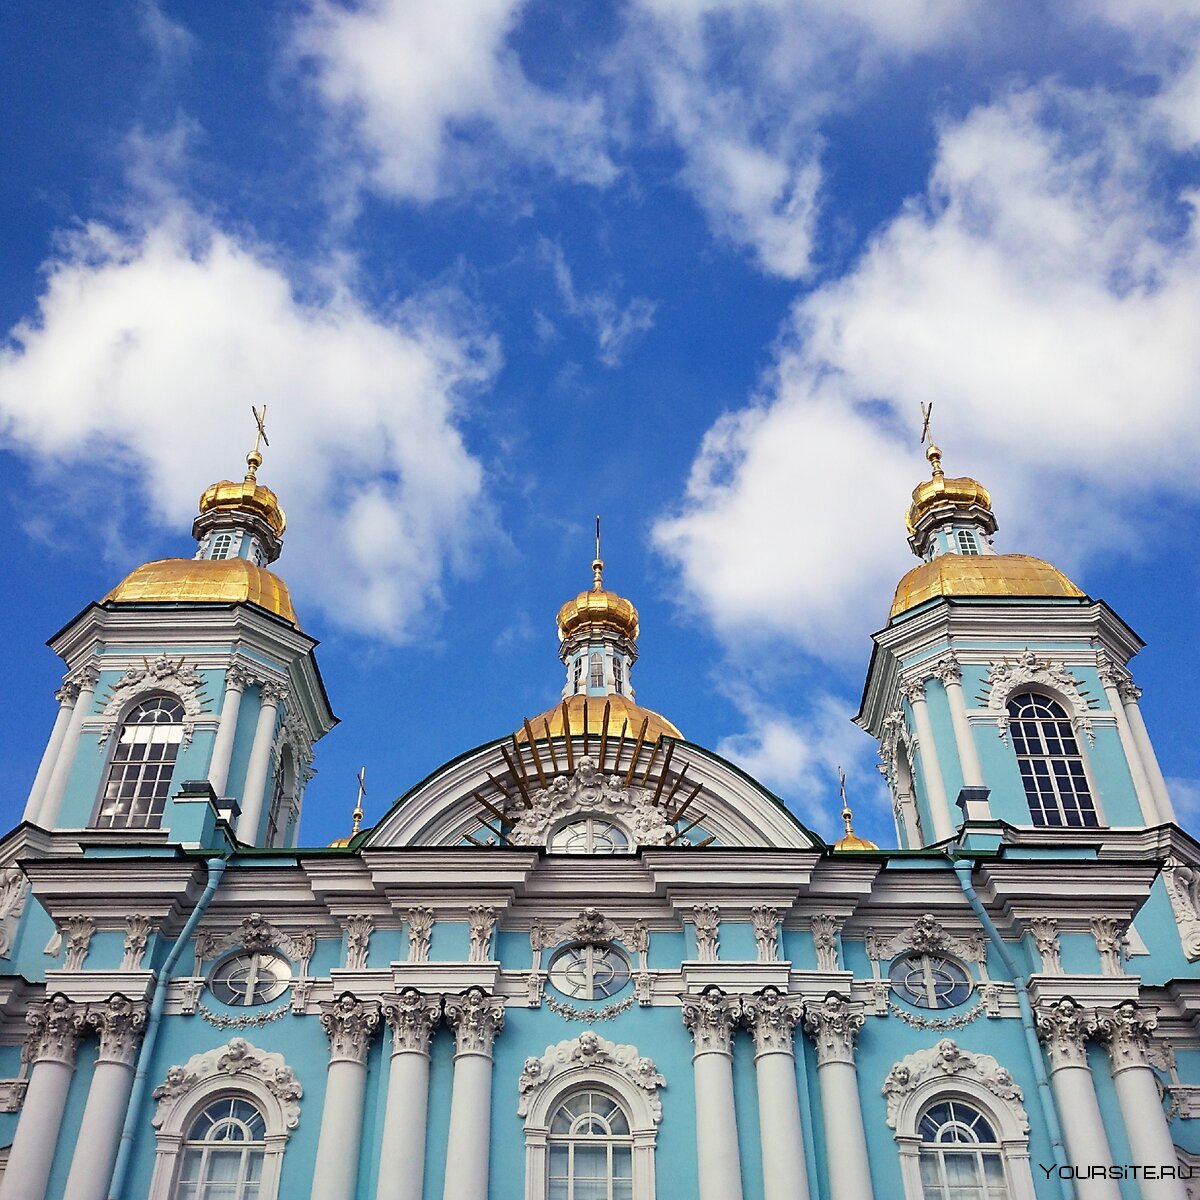 Морской никольский собор в кронштадте: главный храм российского флота